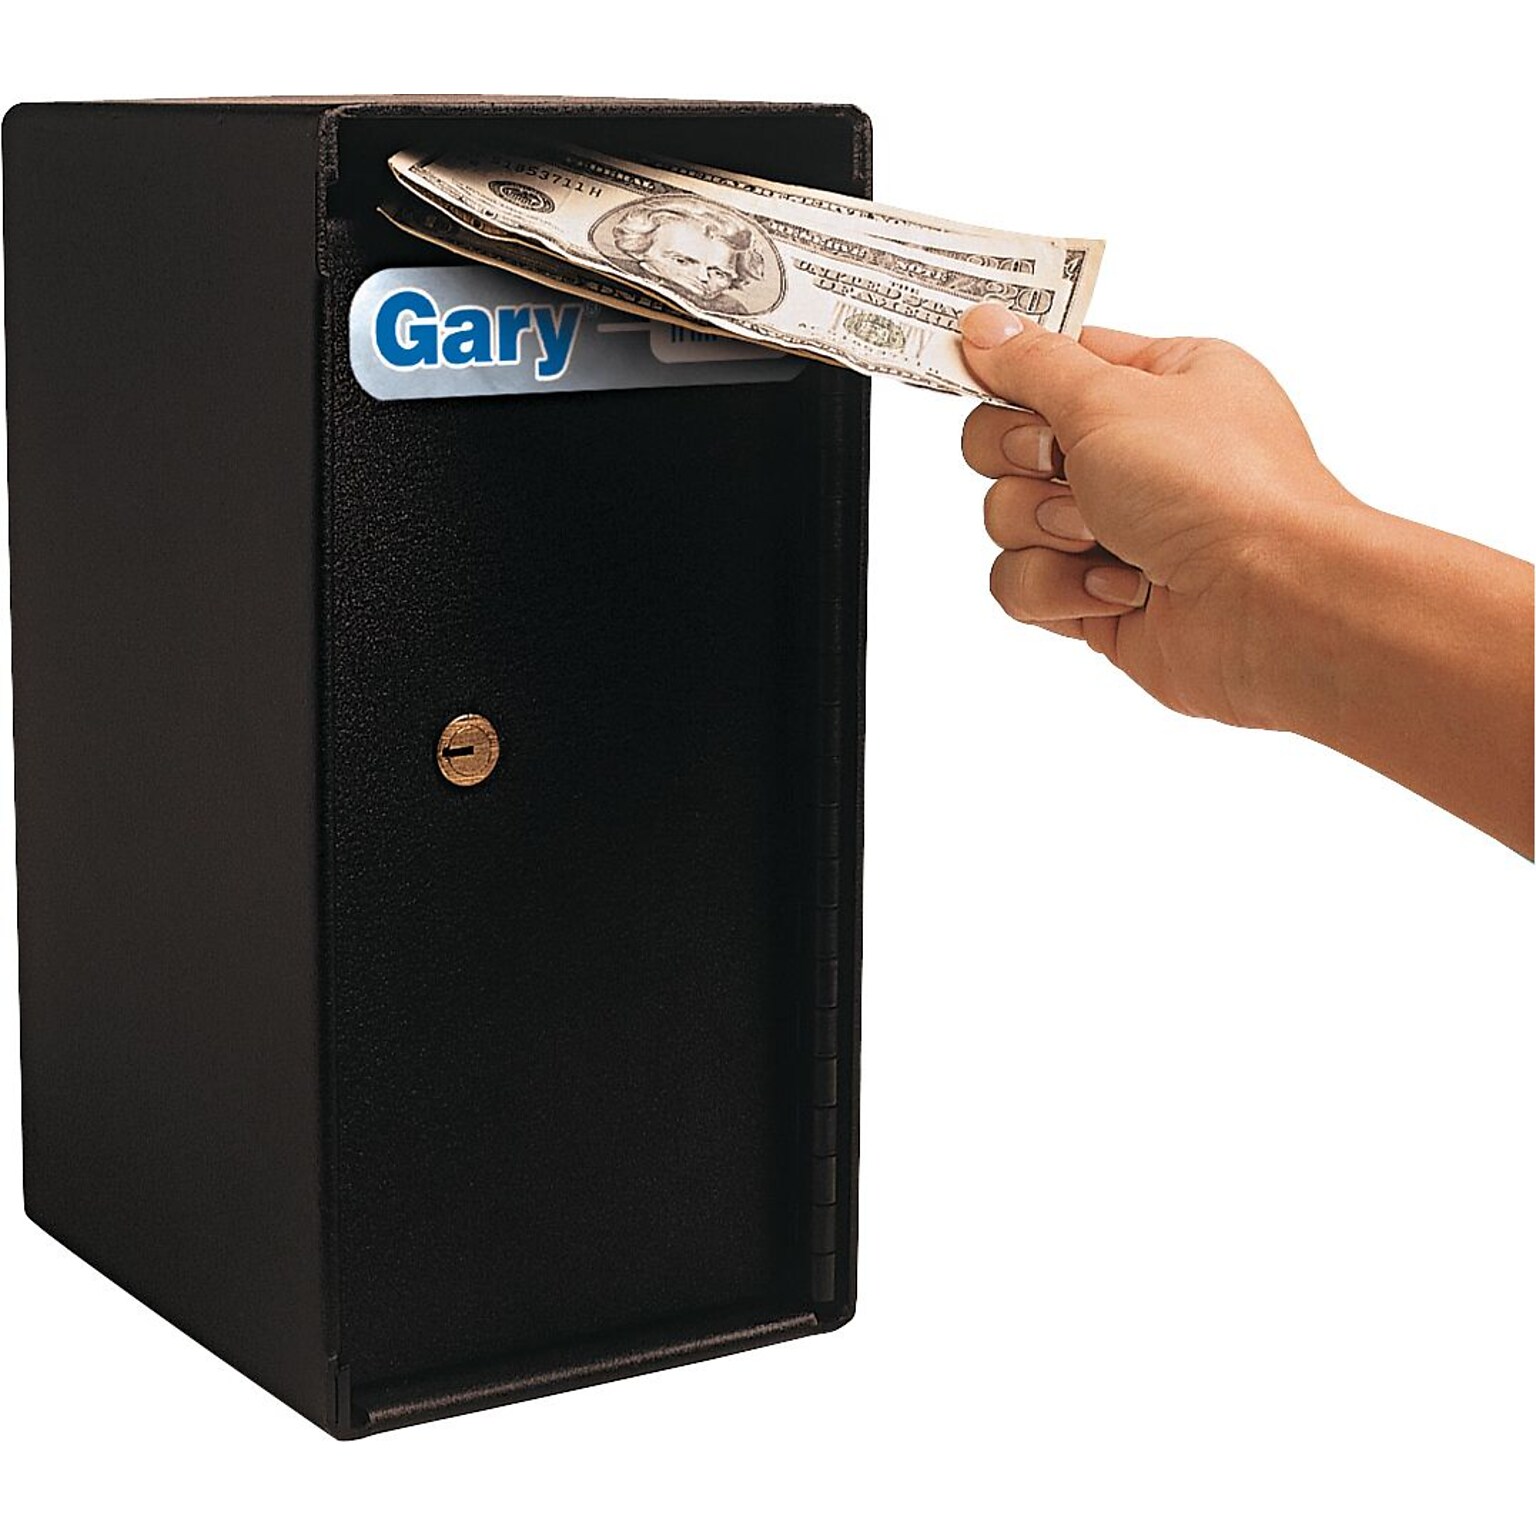 FireKing® Gary® Trim Safe with Key Lock, .29 Cu.Ft. (MS1206)